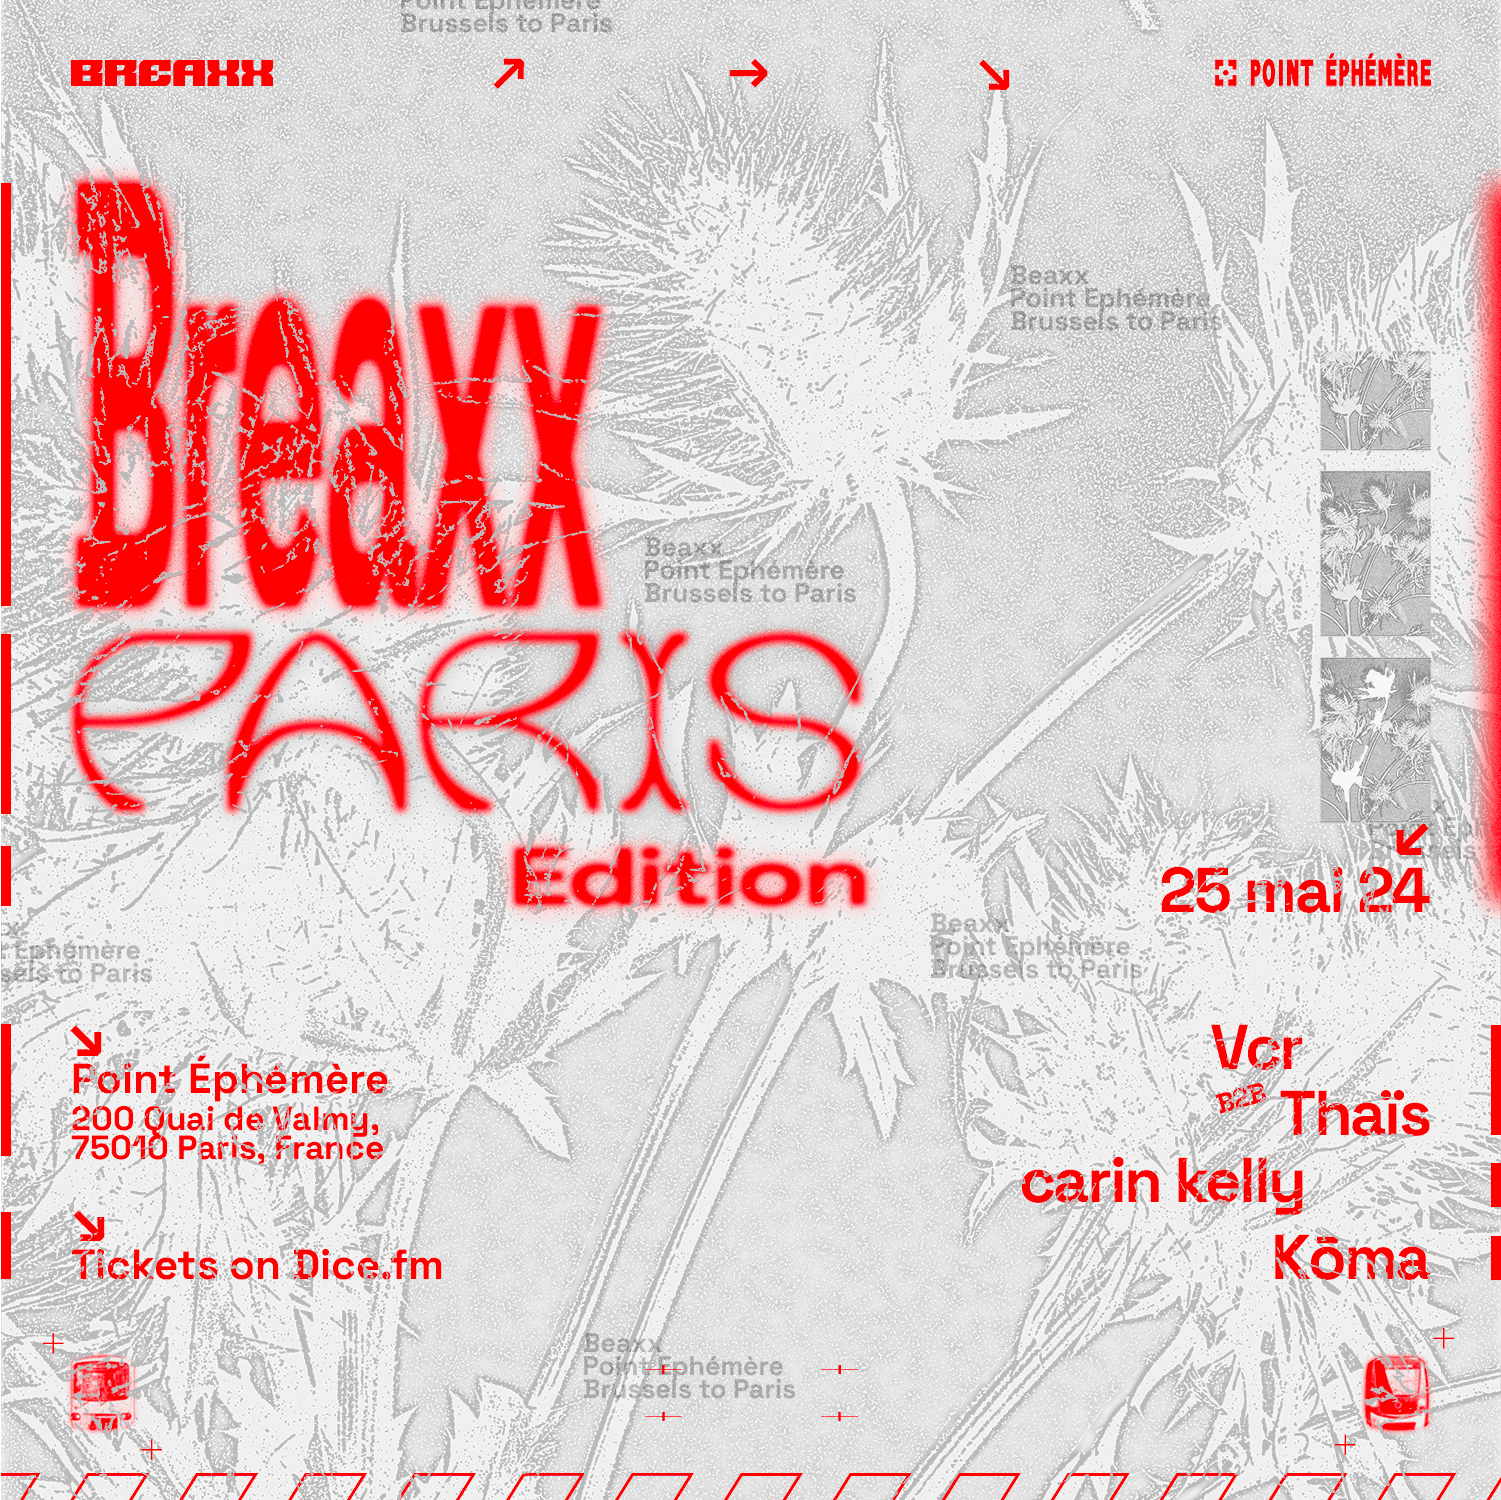 BREAXX Paris Edition - Página frontal